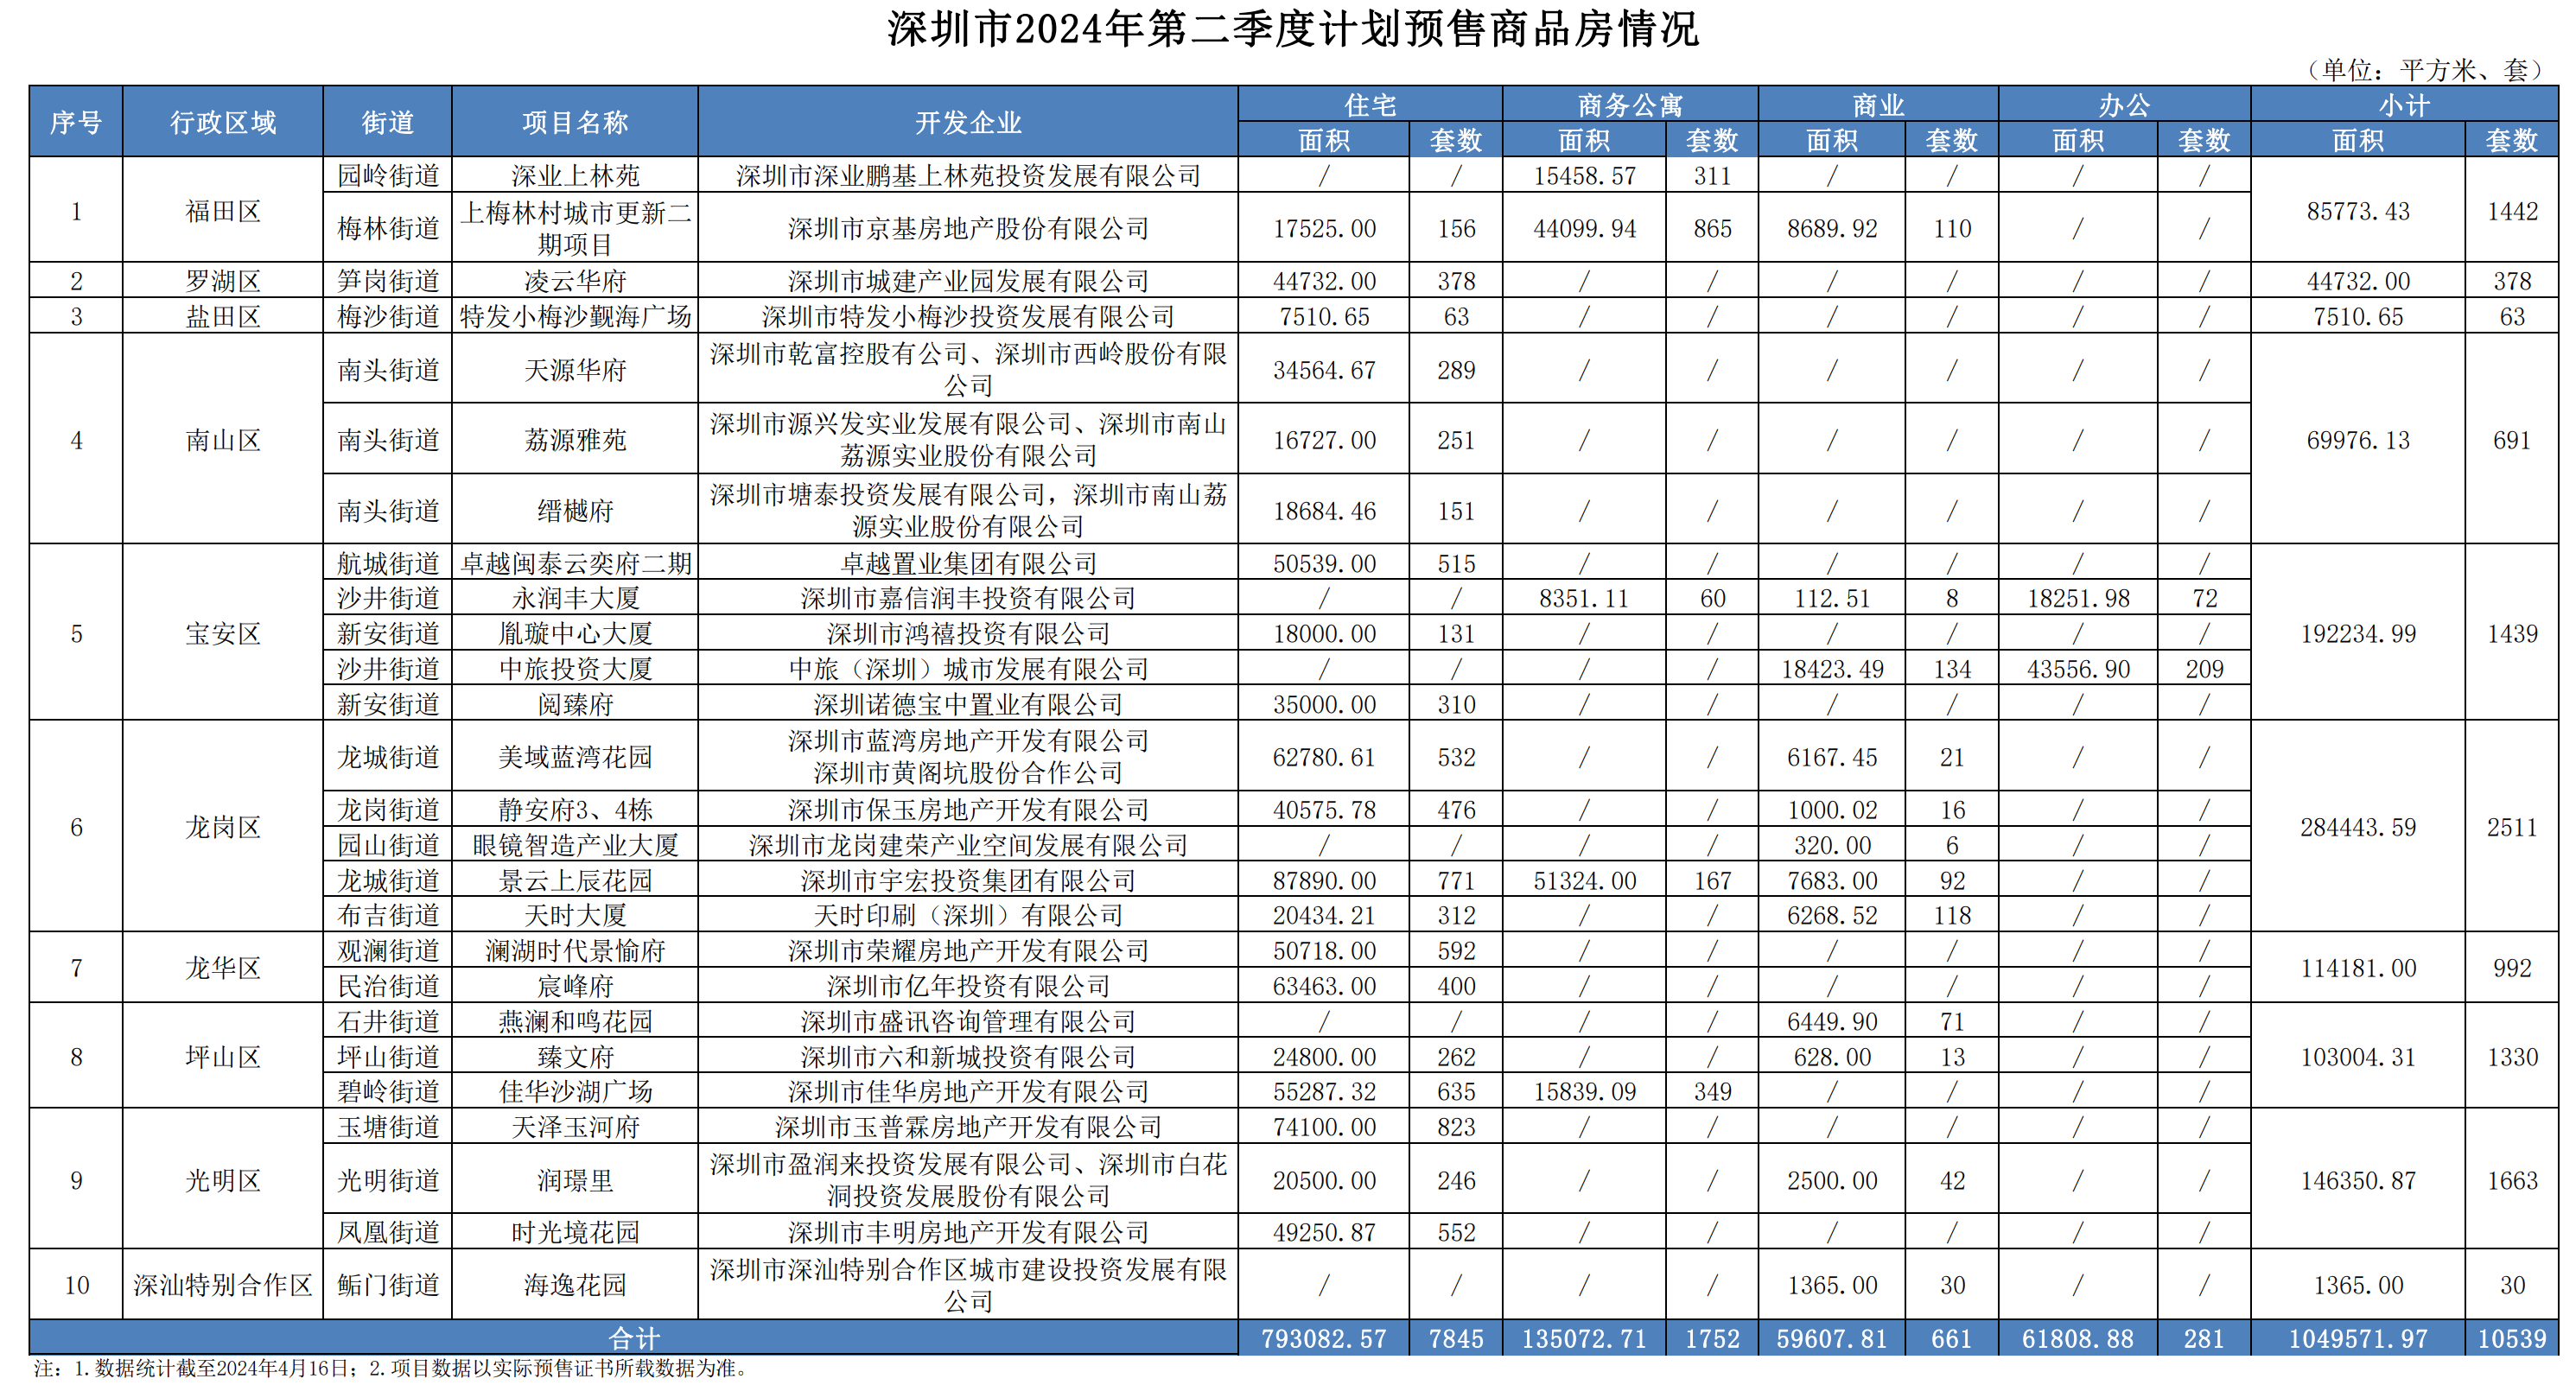 深圳公示第二季度计划预售商品房房源信息 总计10539套